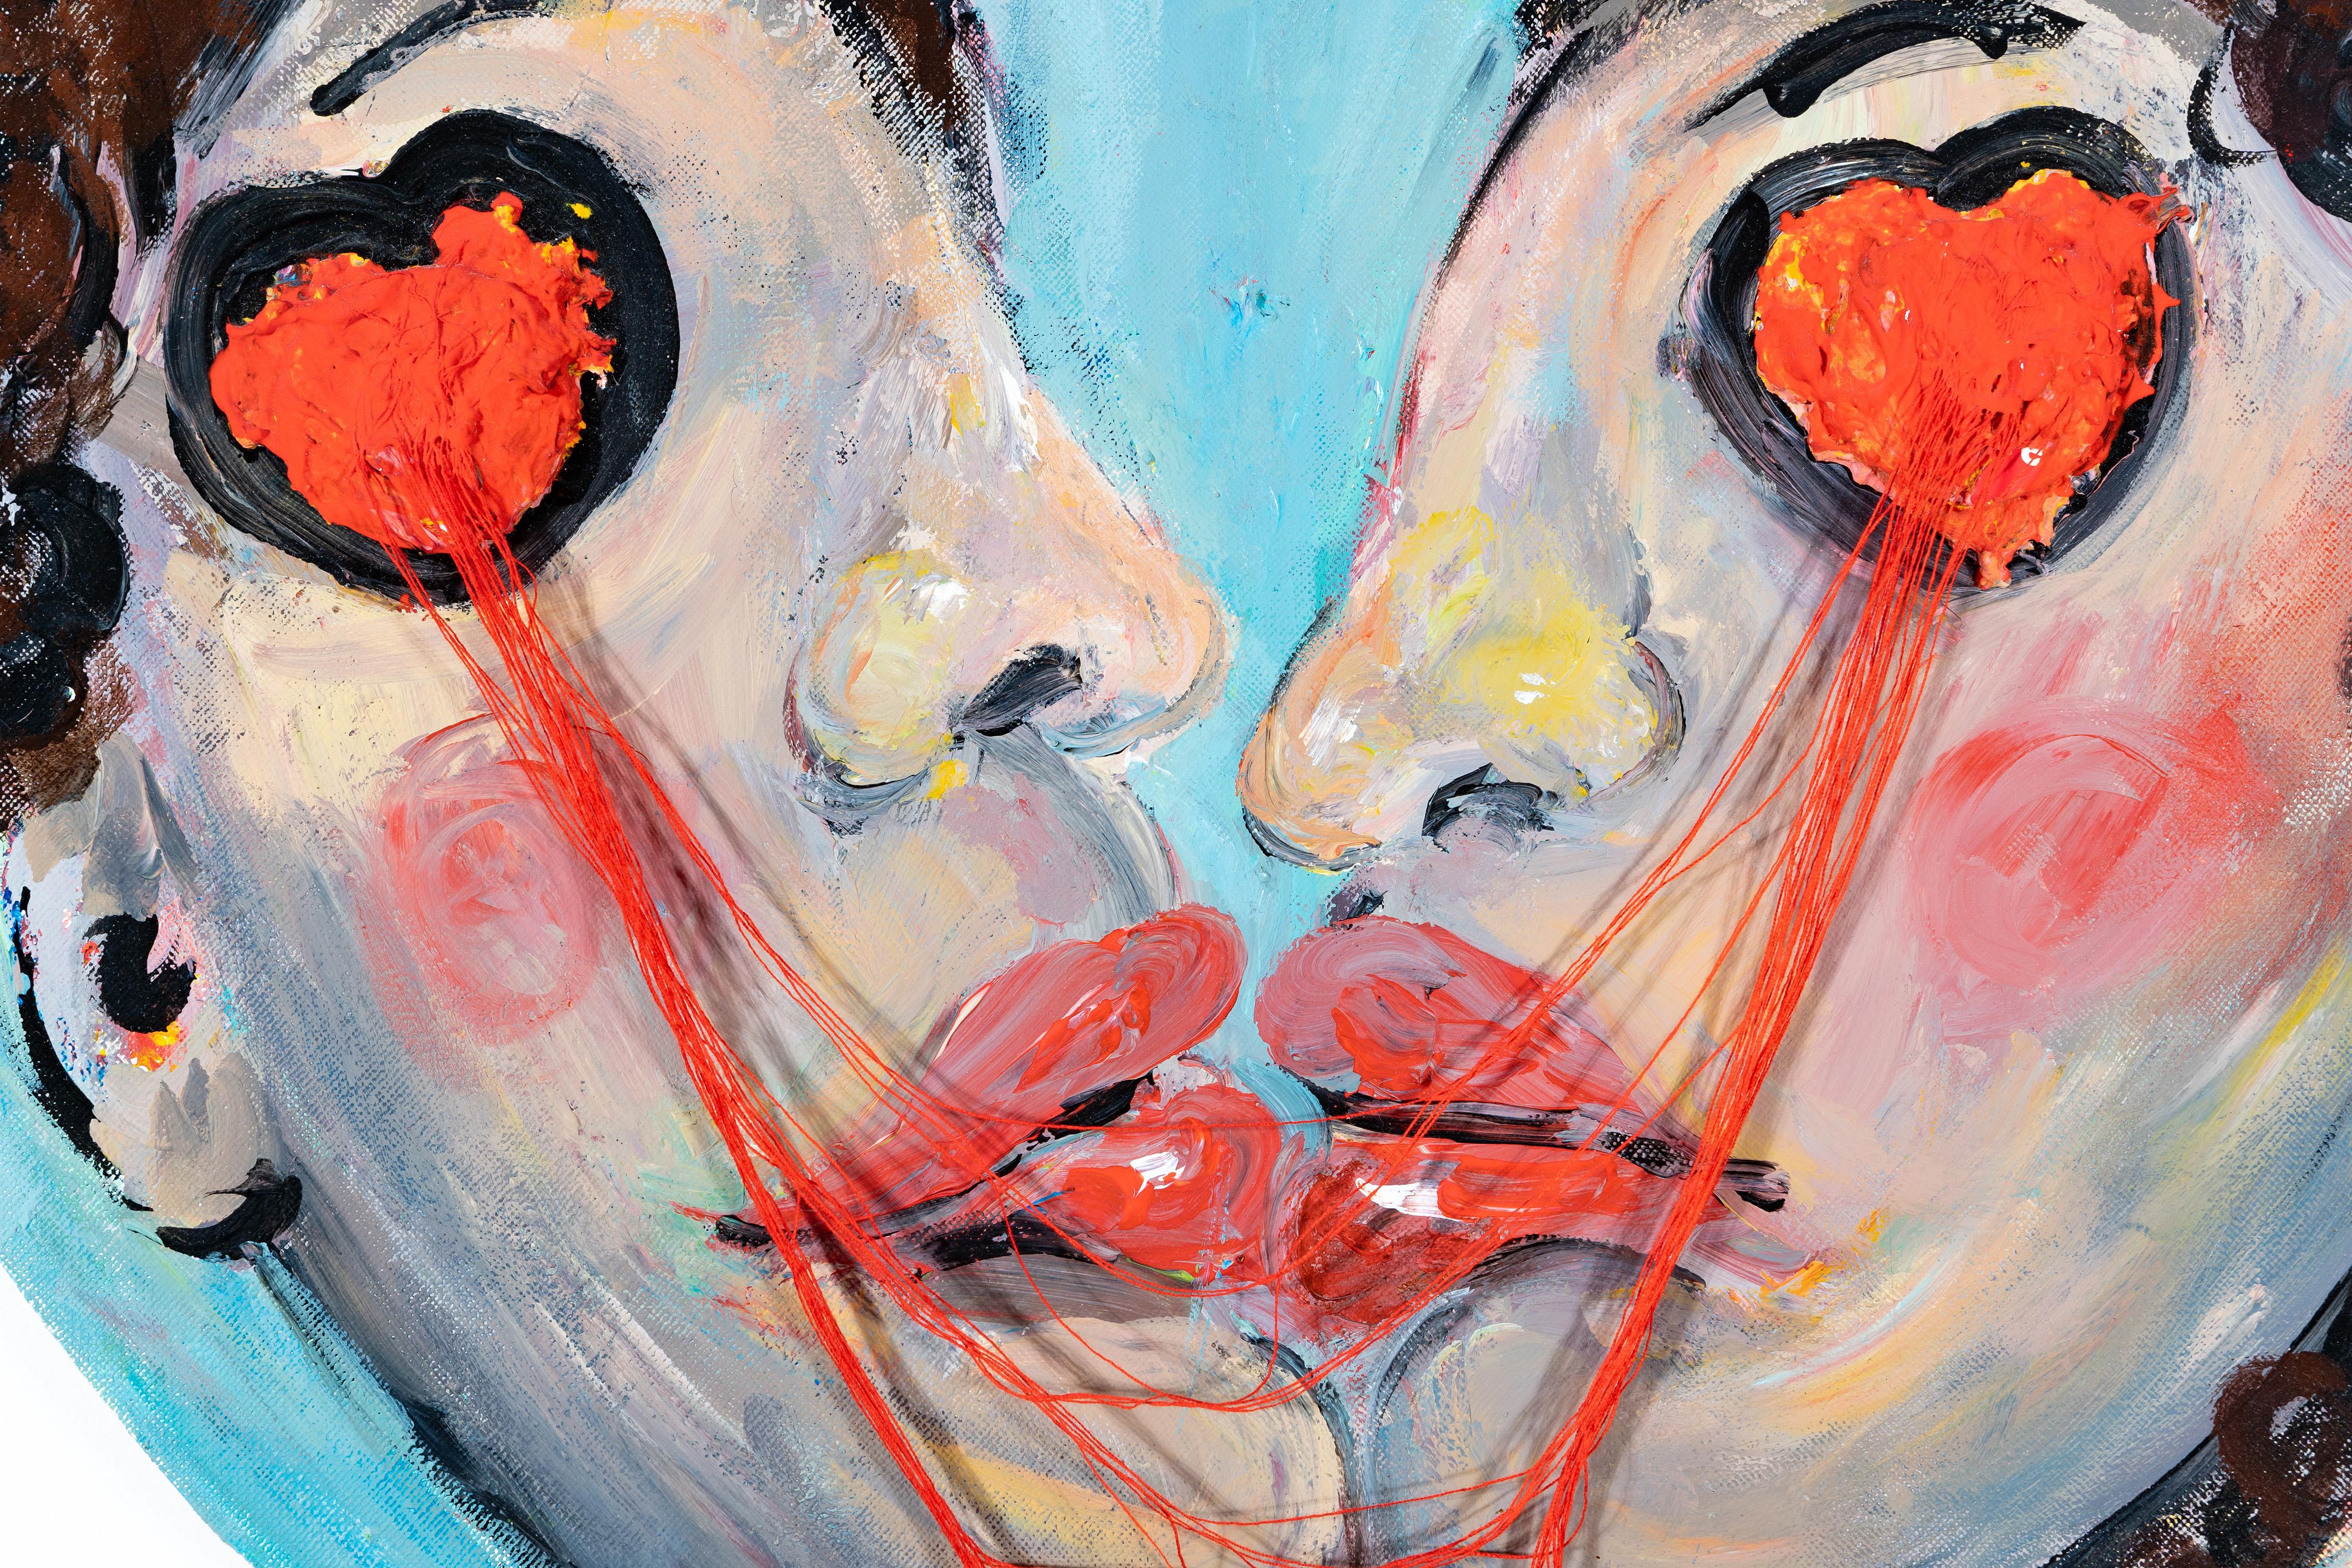 Kreisförmiges Öl- und Acrylgemälde des Künstlers Wenyu Zhu. Dieses Werk zeigt einen leidenschaftlichen Kuss zweier Menschen, die durch viele rote Fäden miteinander verwoben sind. Das Symbol des roten Fadens lässt sich bis in die alte chinesische